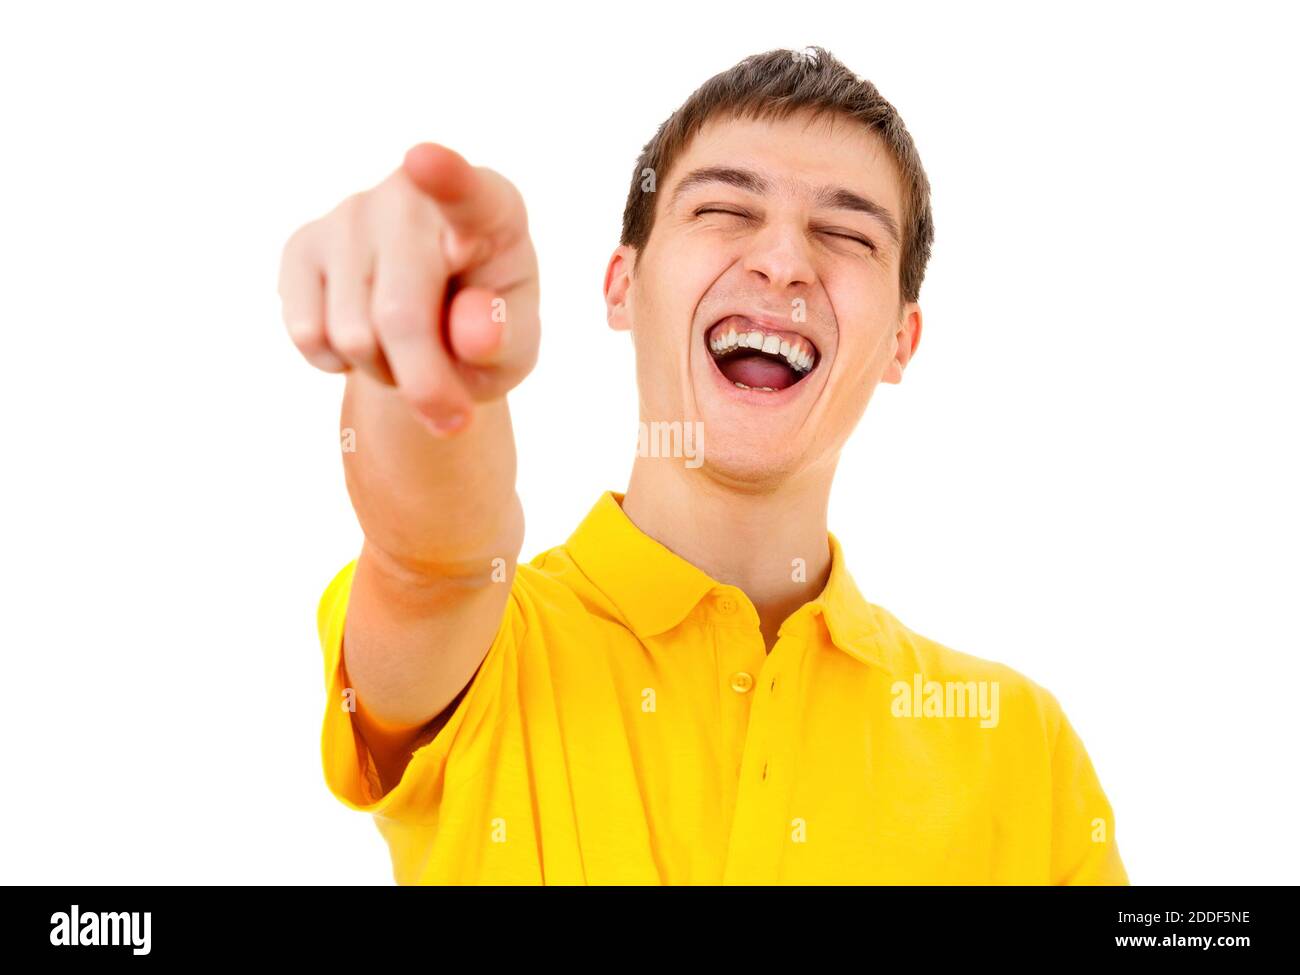 Fröhlicher junger Mann, der auf den weißen Hintergrund zeigt und lacht Nahaufnahme Stockfoto